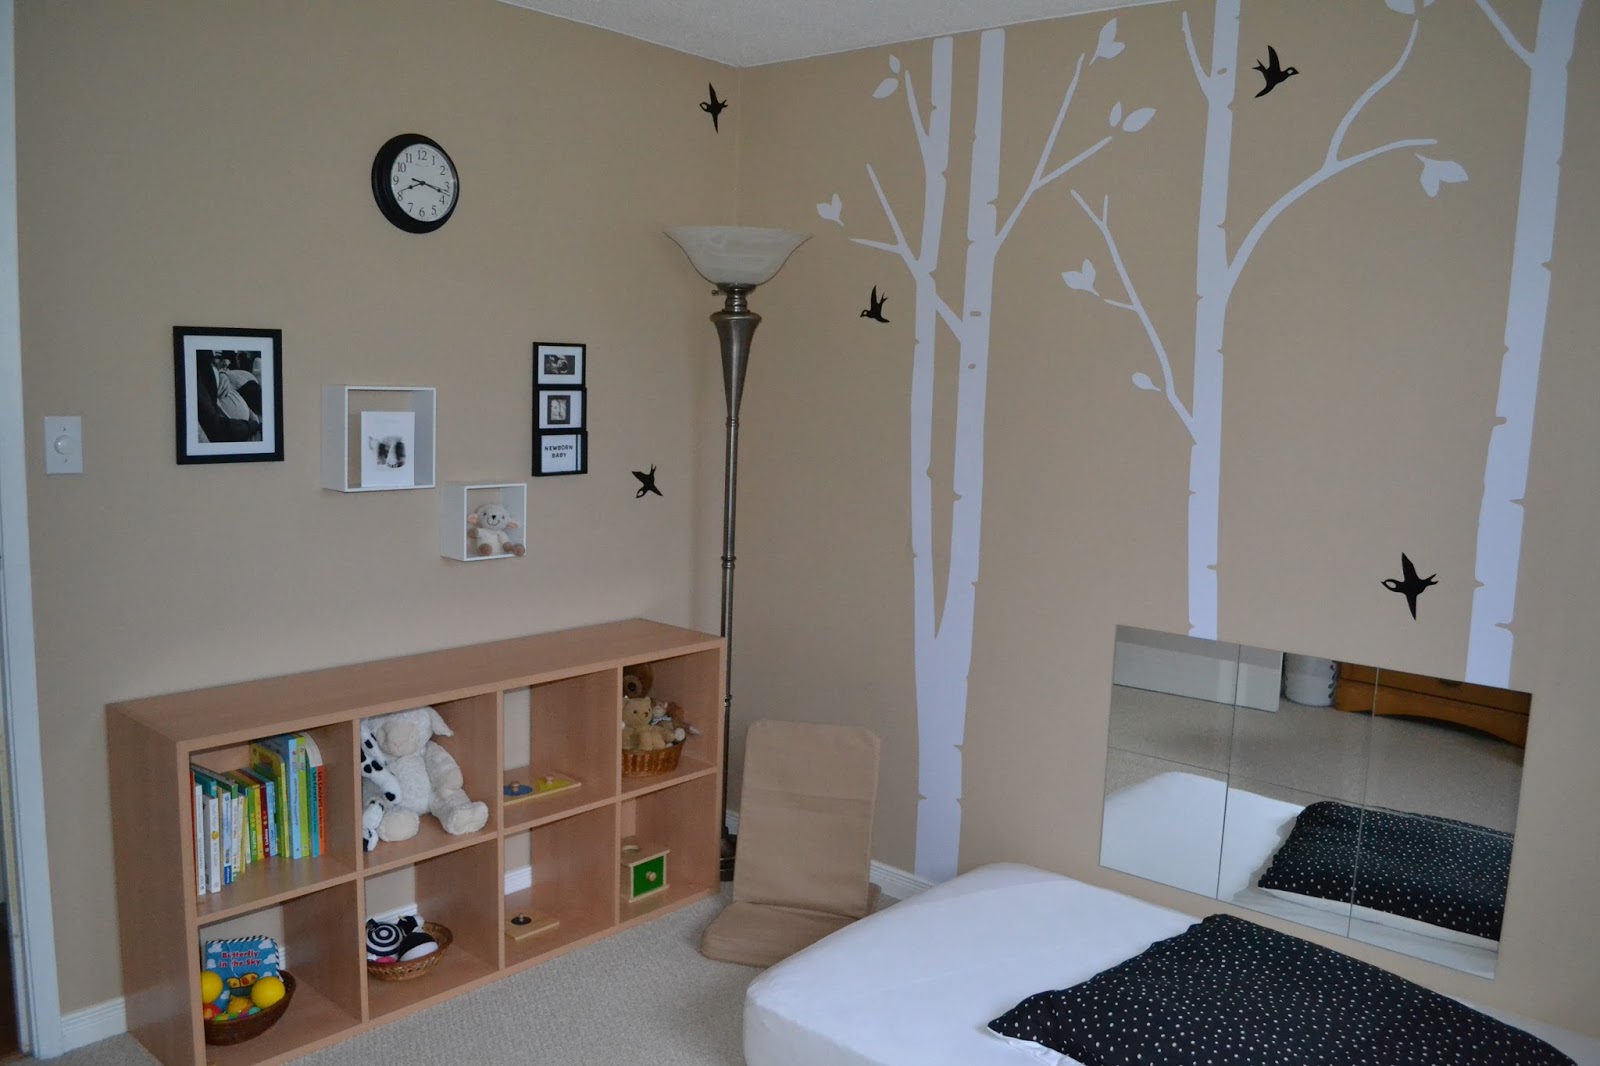 La Cama #Montessori es ideal para las habitaciones destinadas al